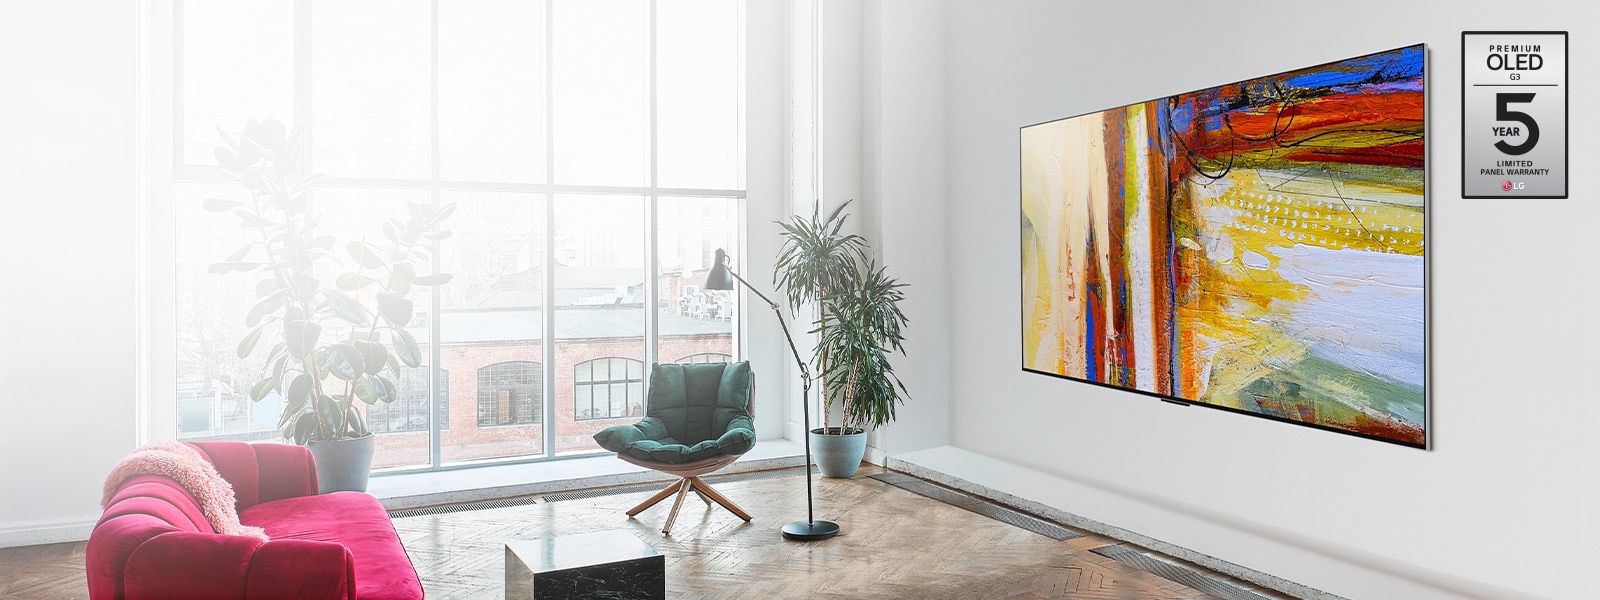 Slika LG OLED evo TV G3, ki prikazuje barvito abstraktno umetniško delo v svetli in živahni sobi.